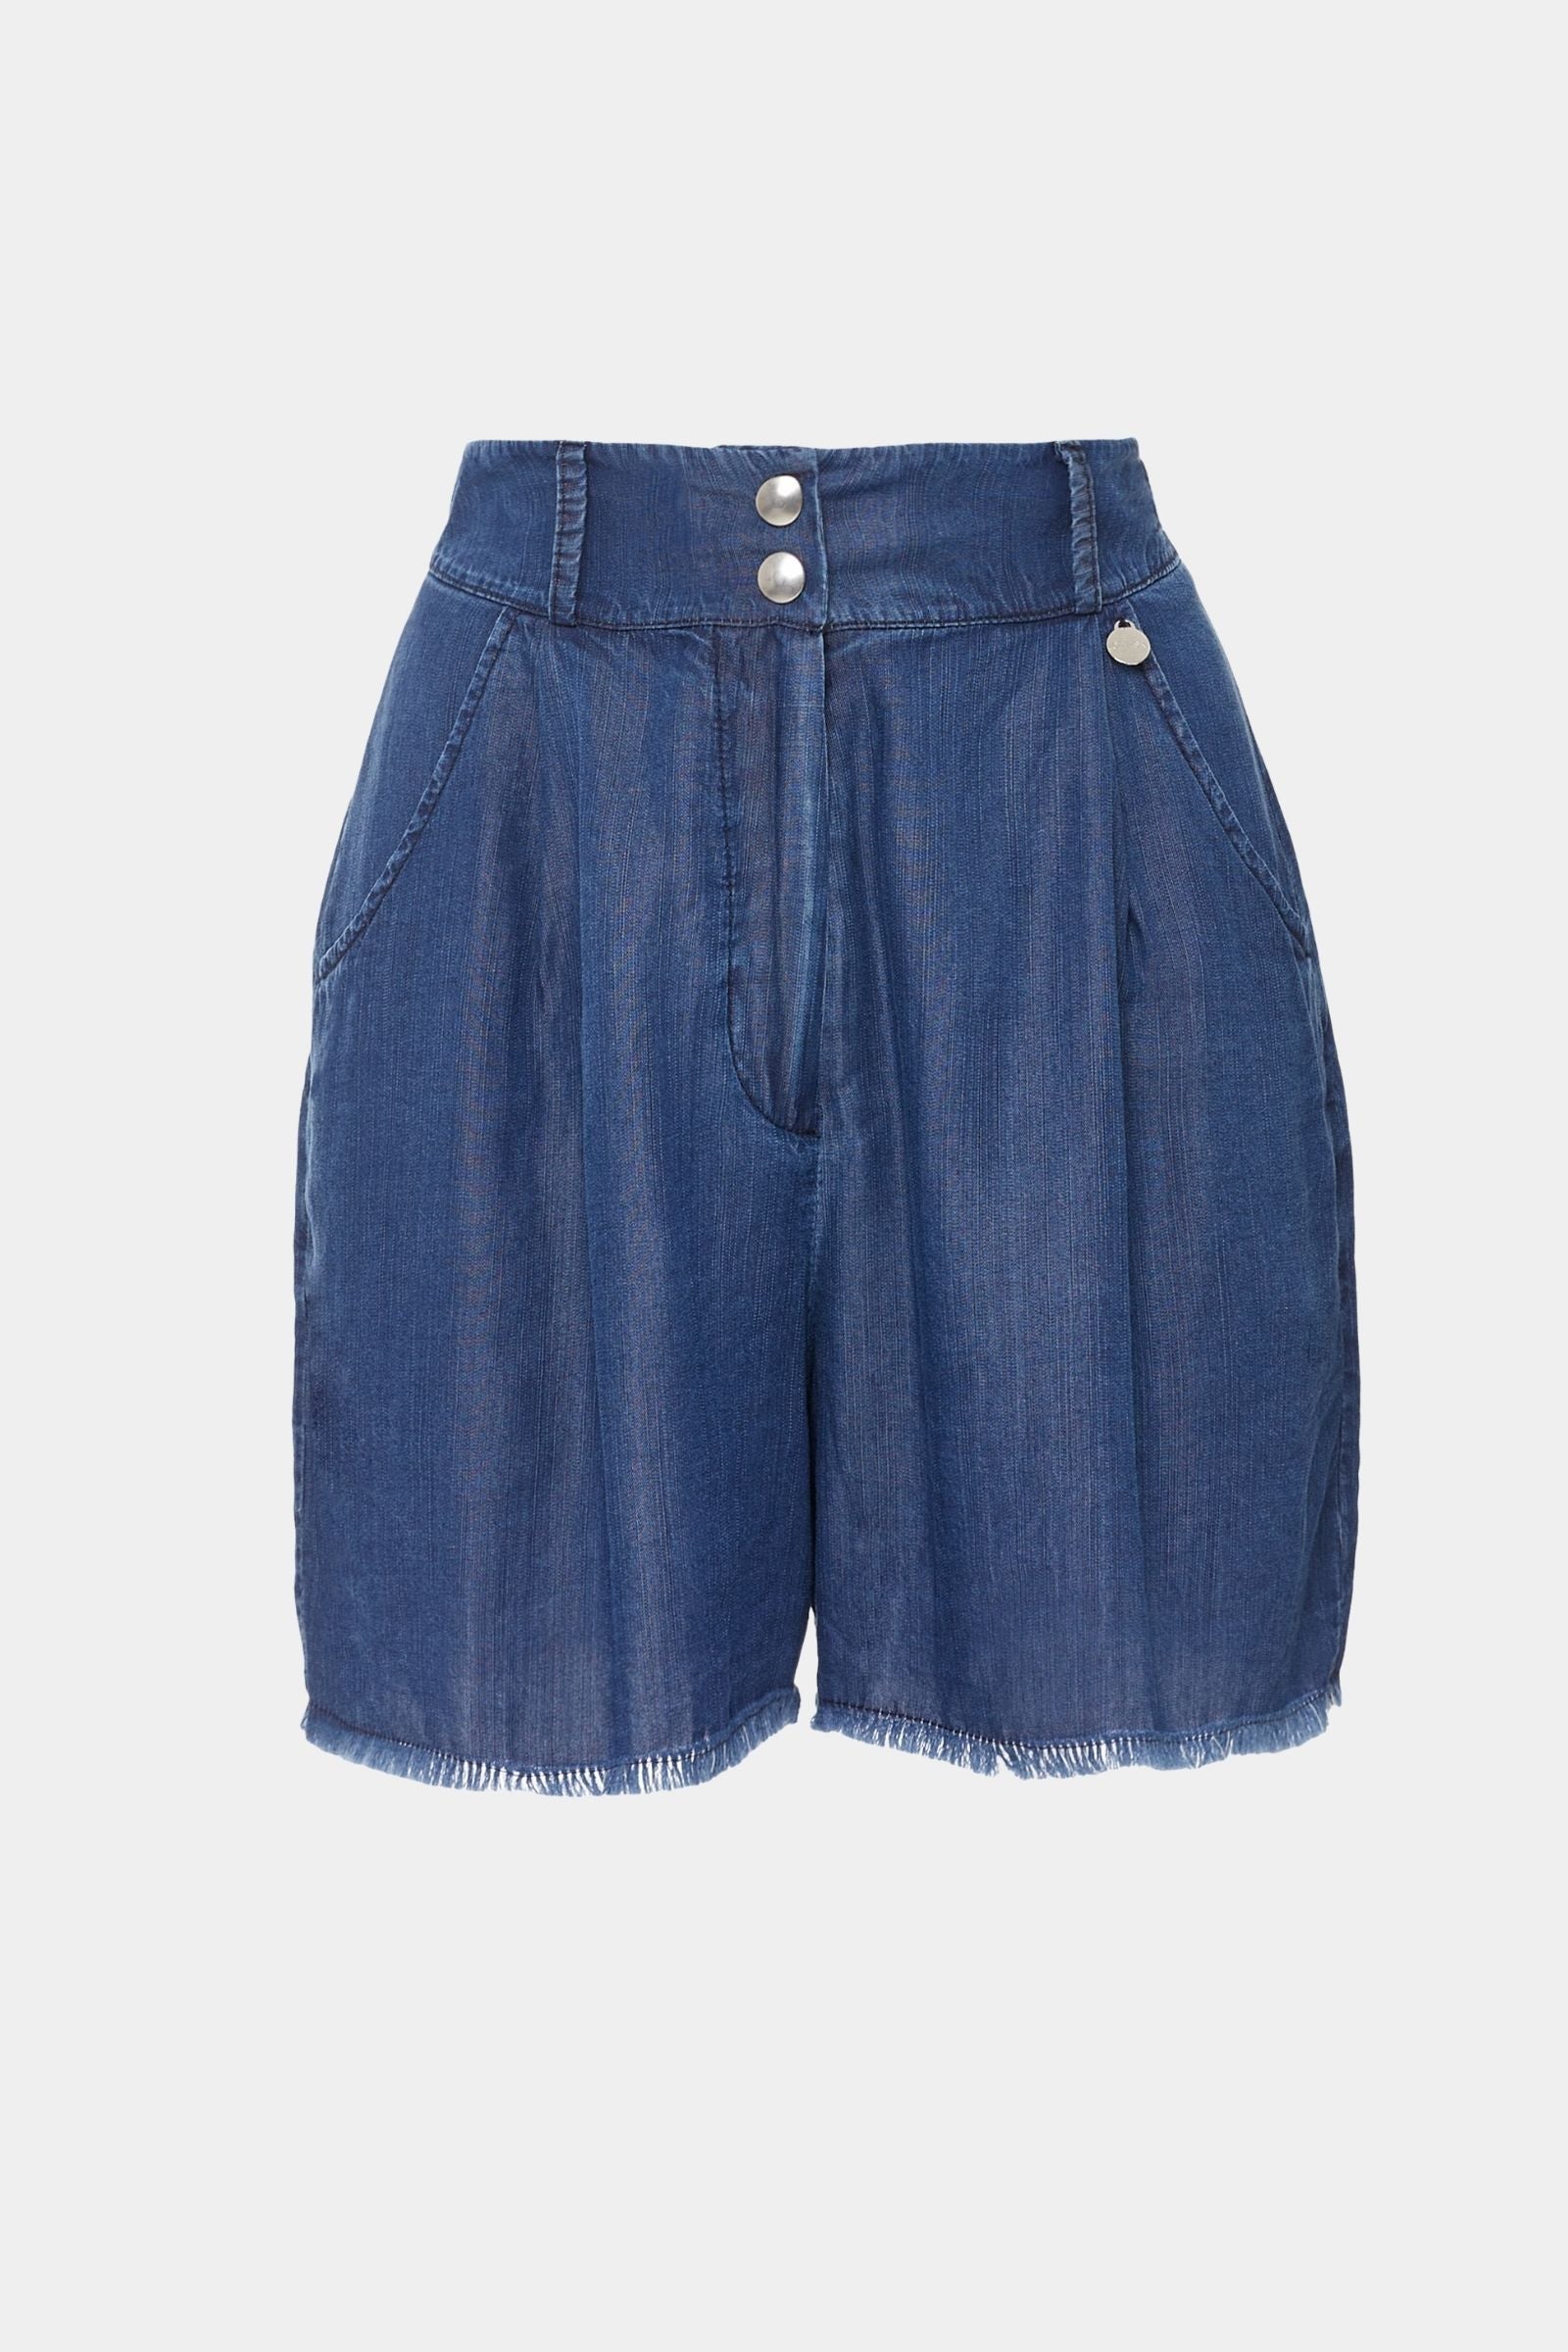 Pantalón corto azul vaquero con pinzas - lolitasyl.com